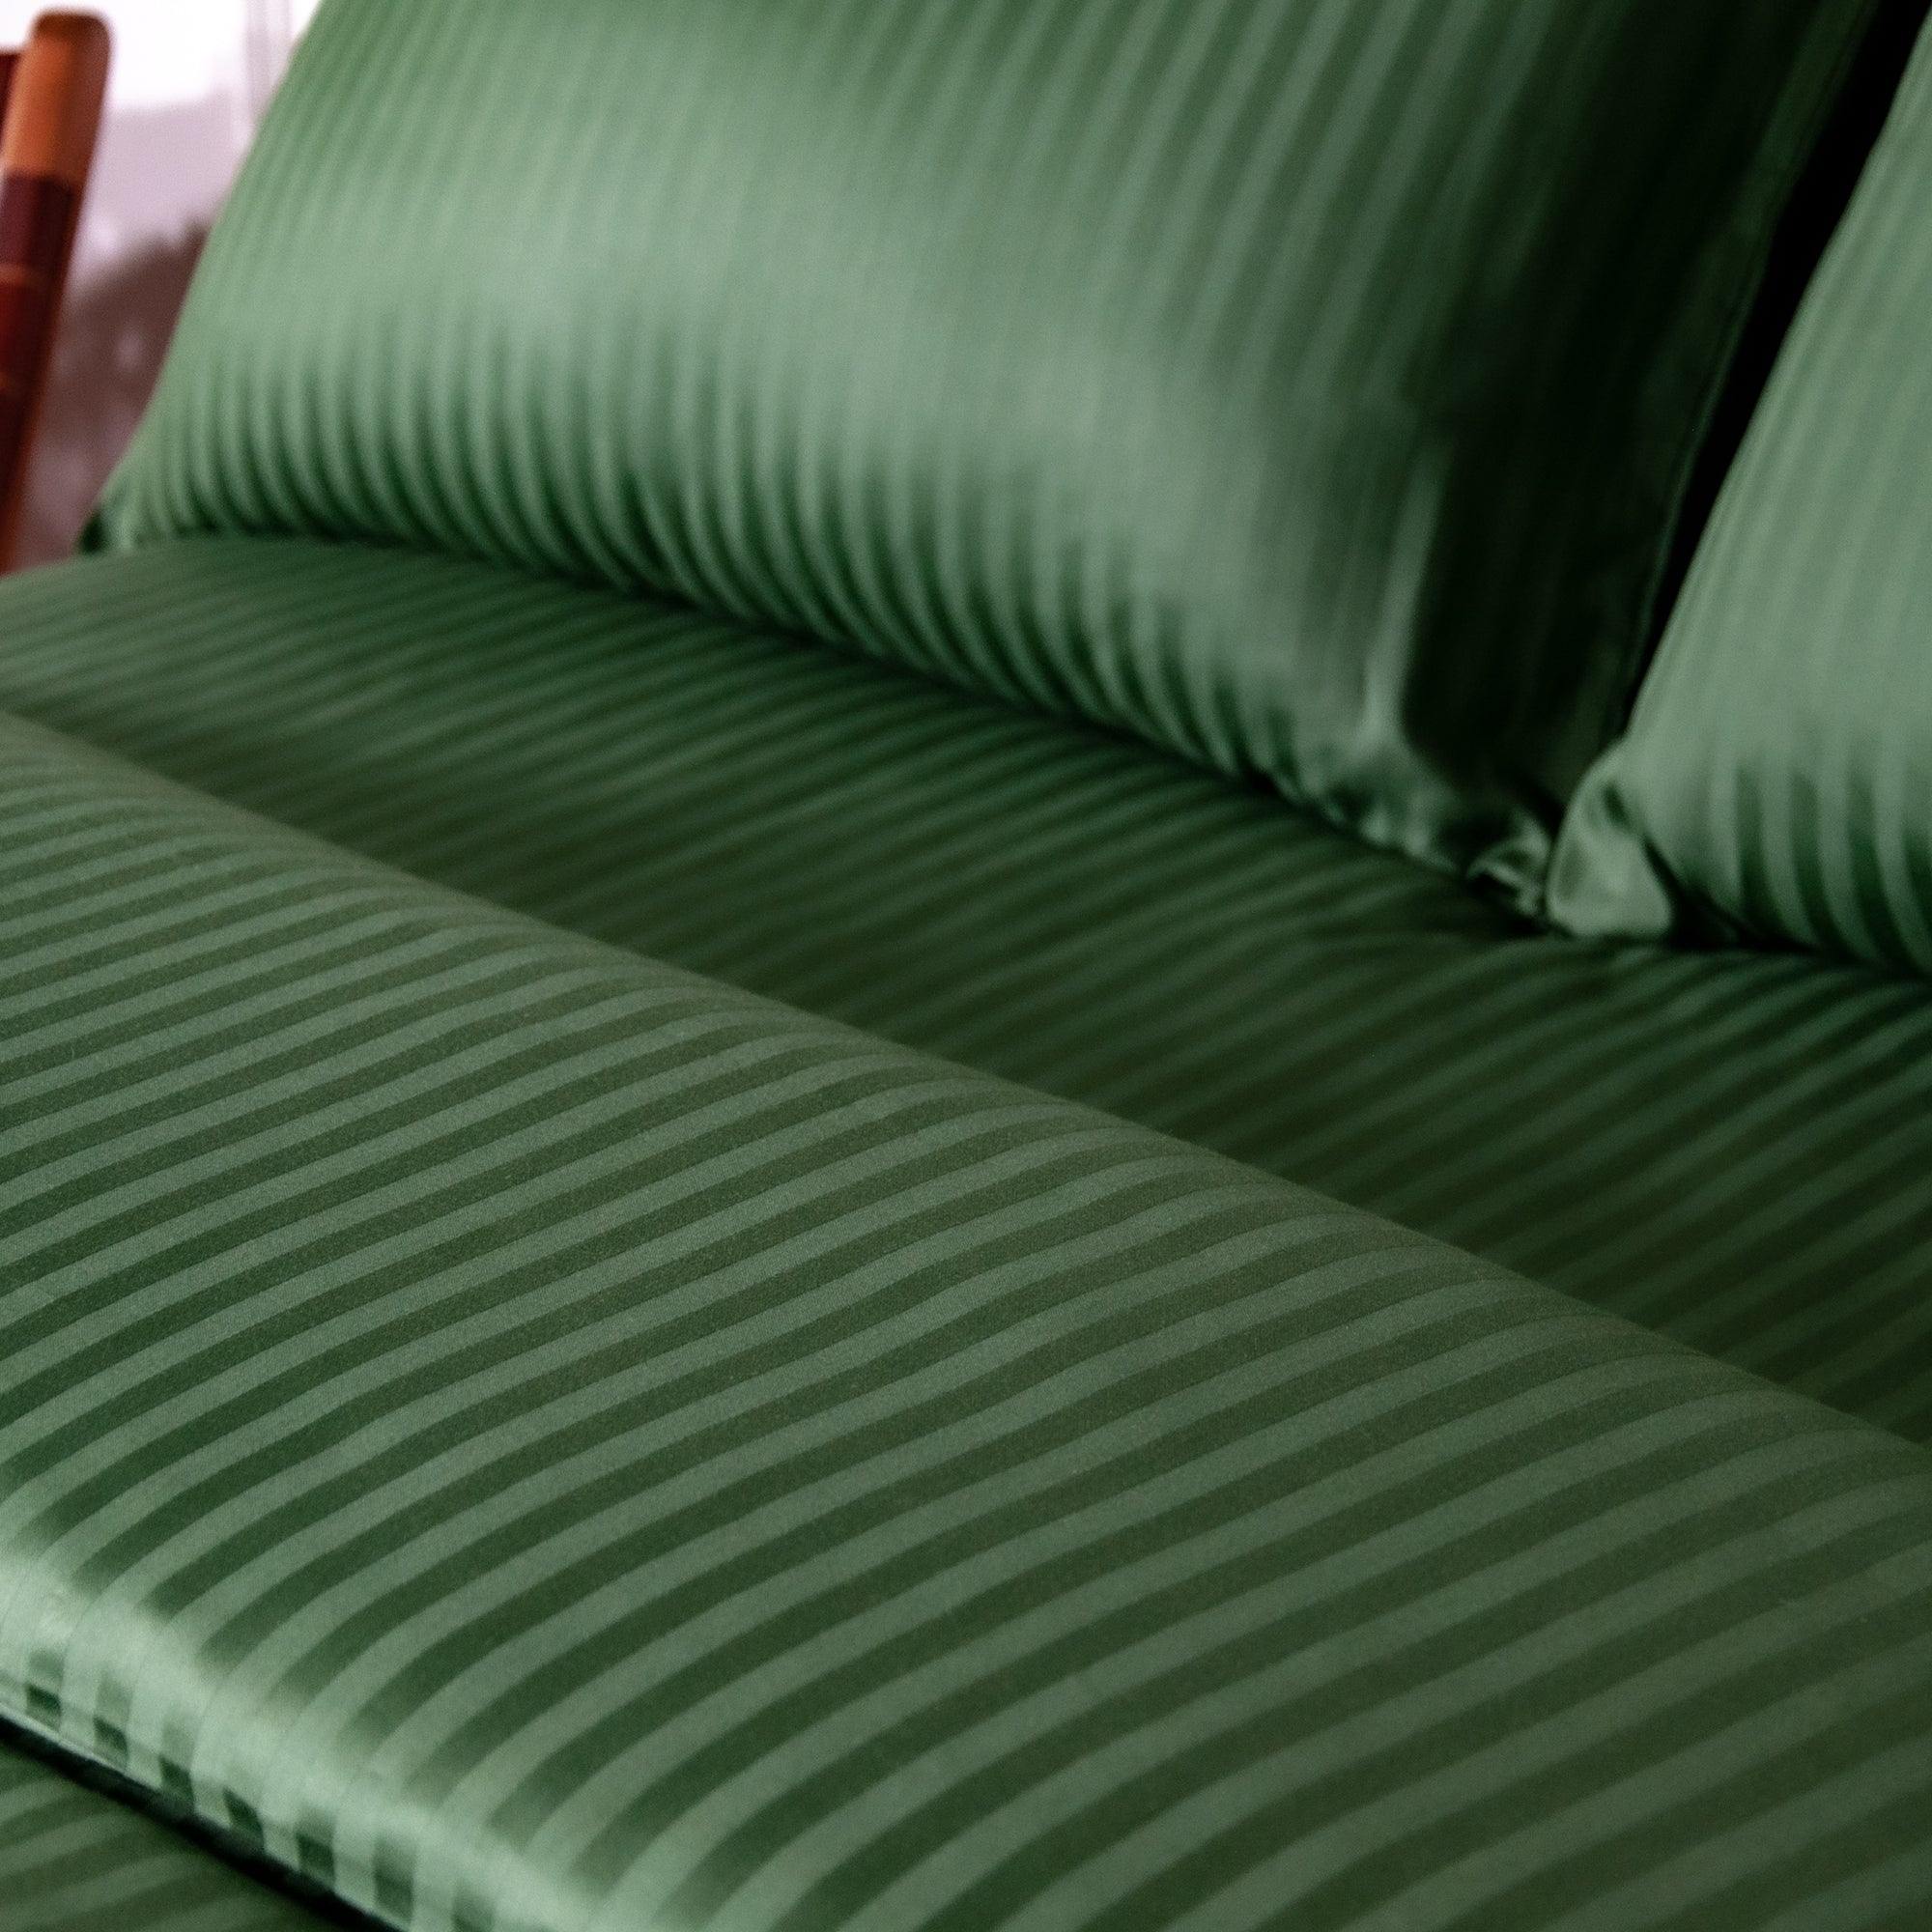 Einteiliges, grün gestreiftes Bettlaken aus 100 % Baumwollsatin